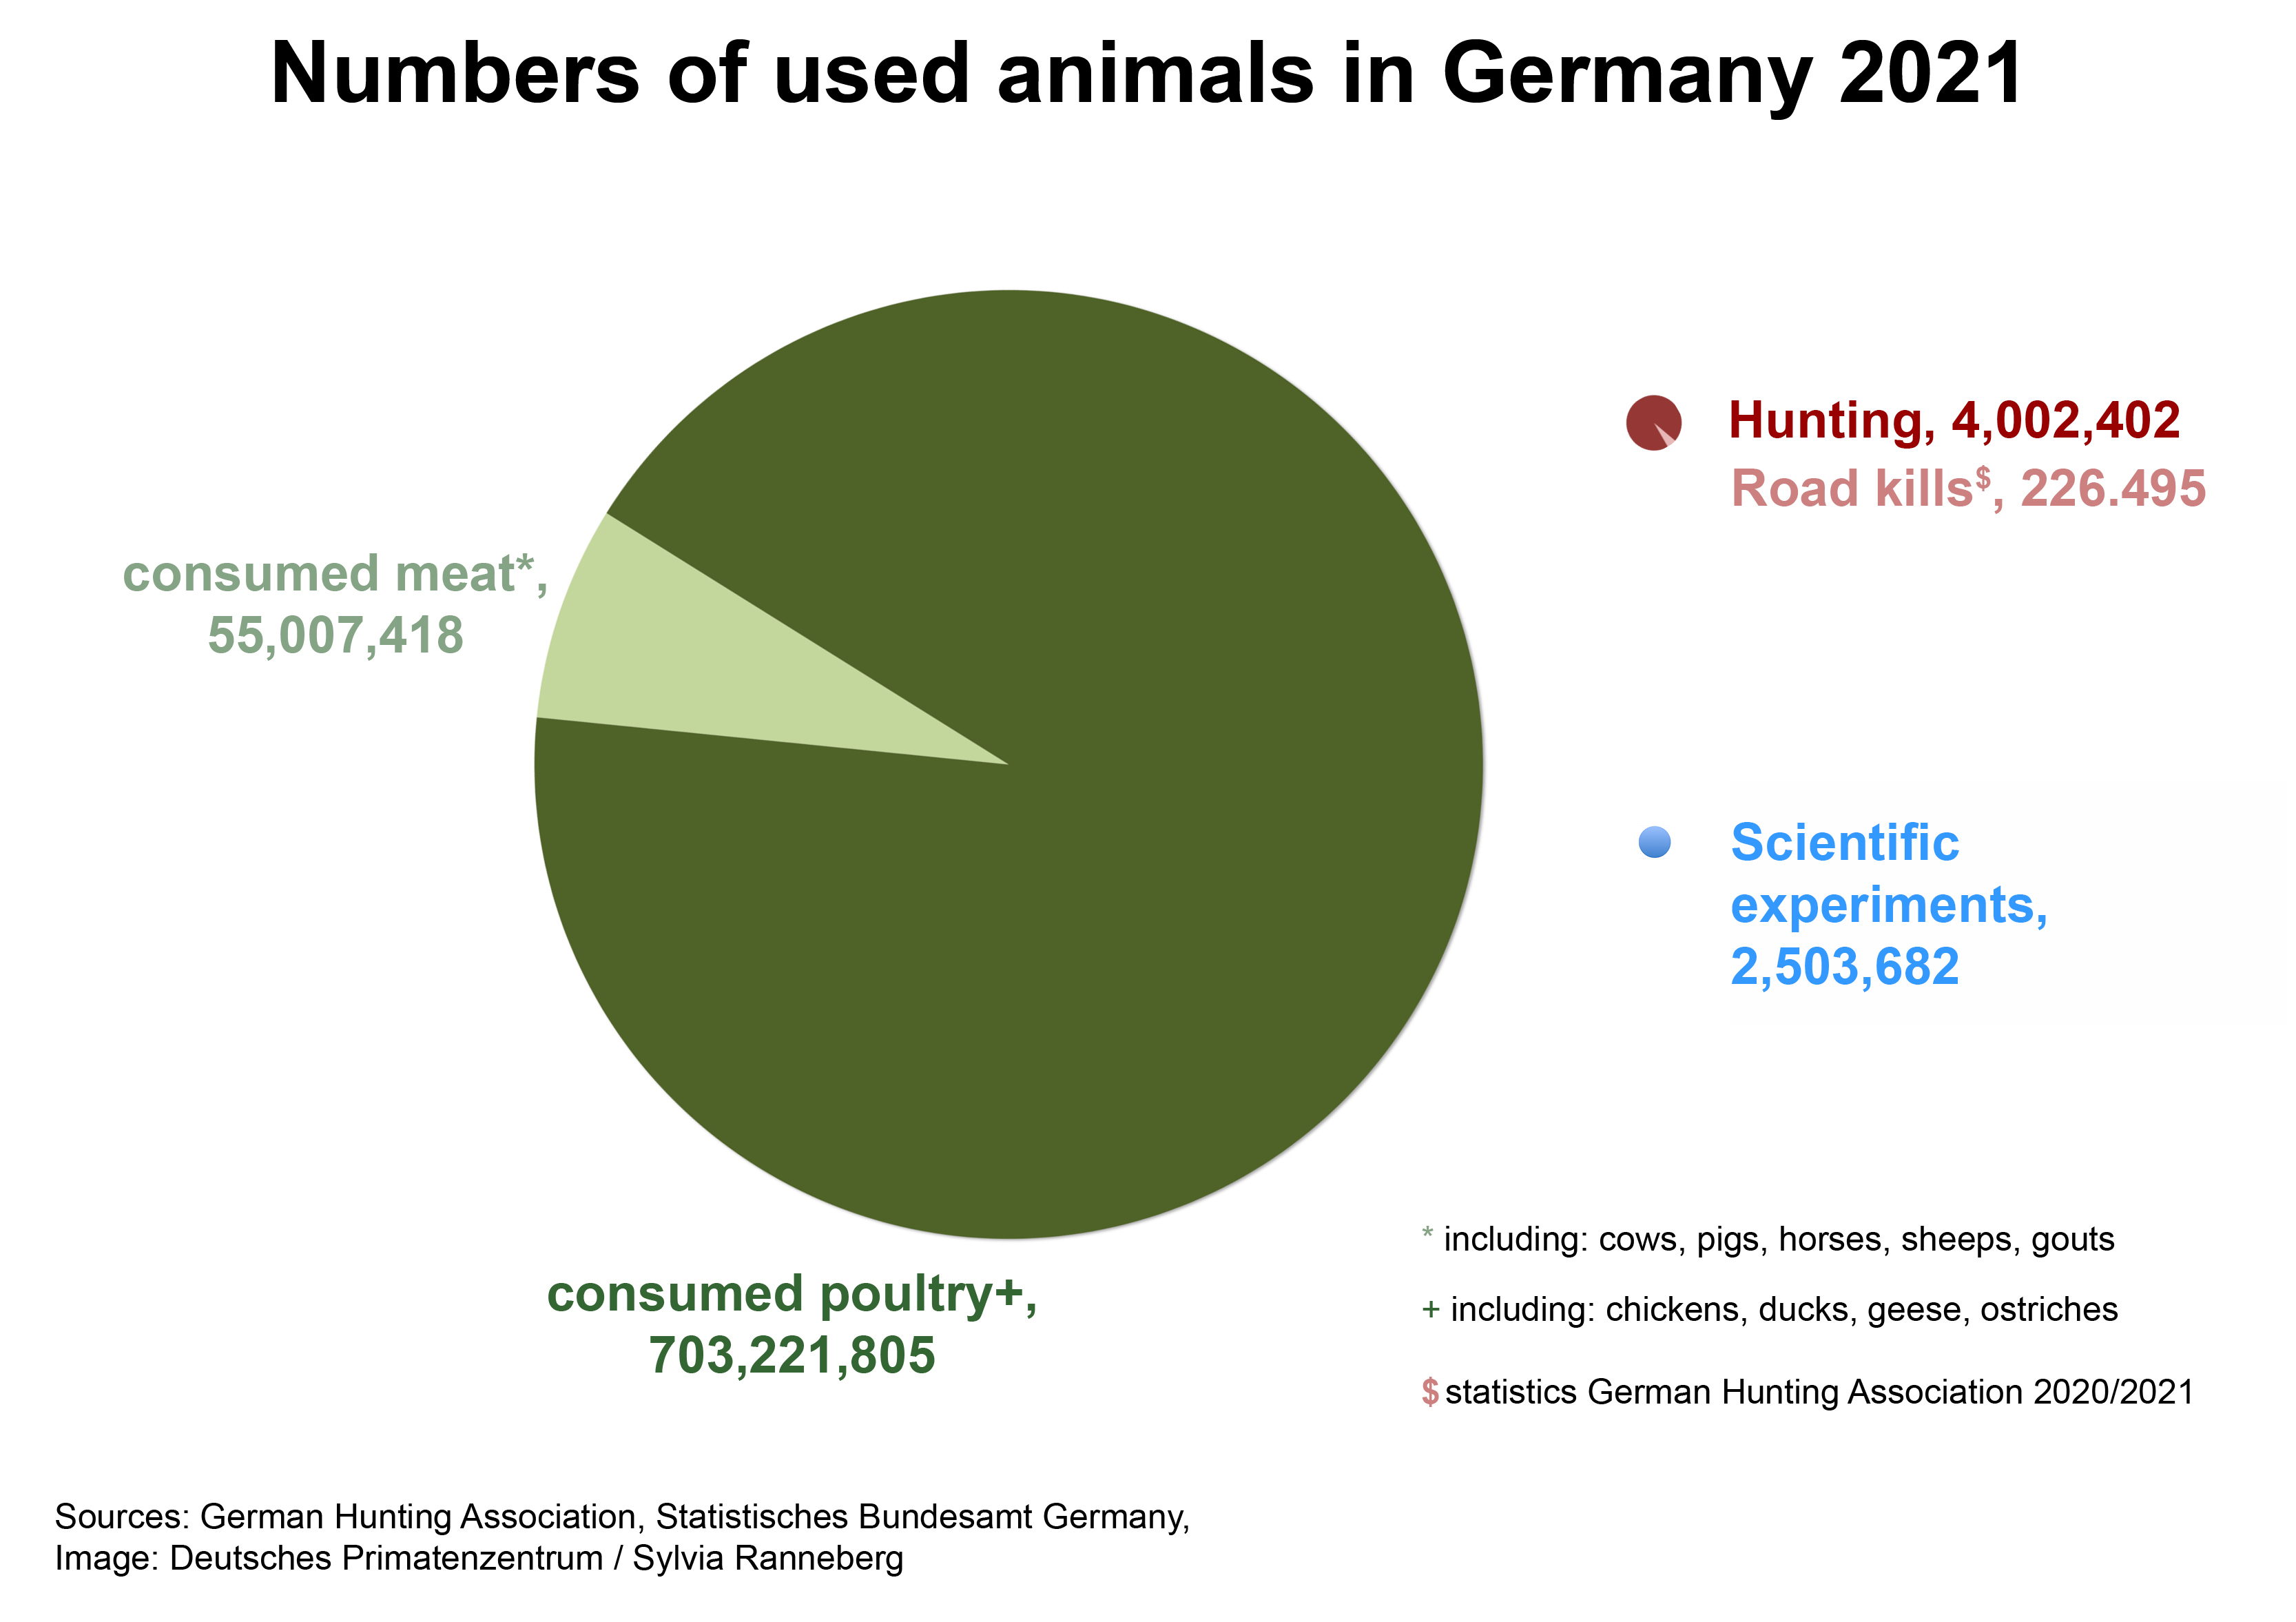 Deutsches Primatenzentrum: Numbers of experimental animals in Germany